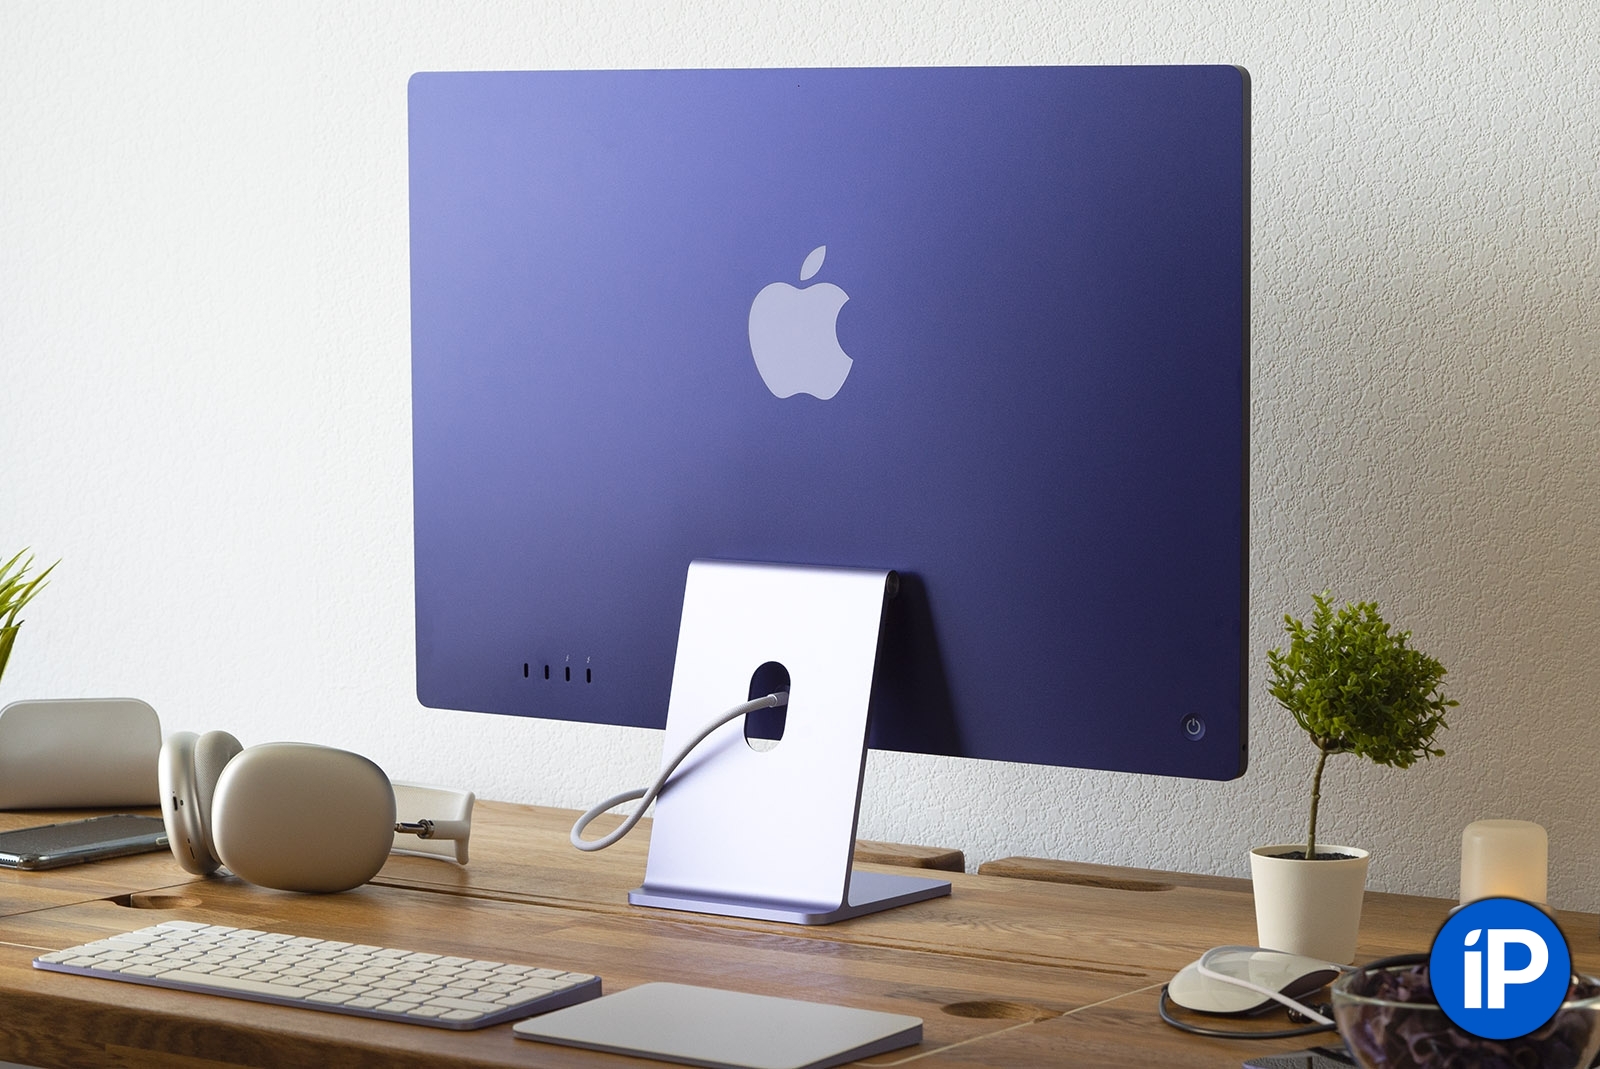 Поставки Mac выросли на 14% перед анонсом новых MacBook Pro